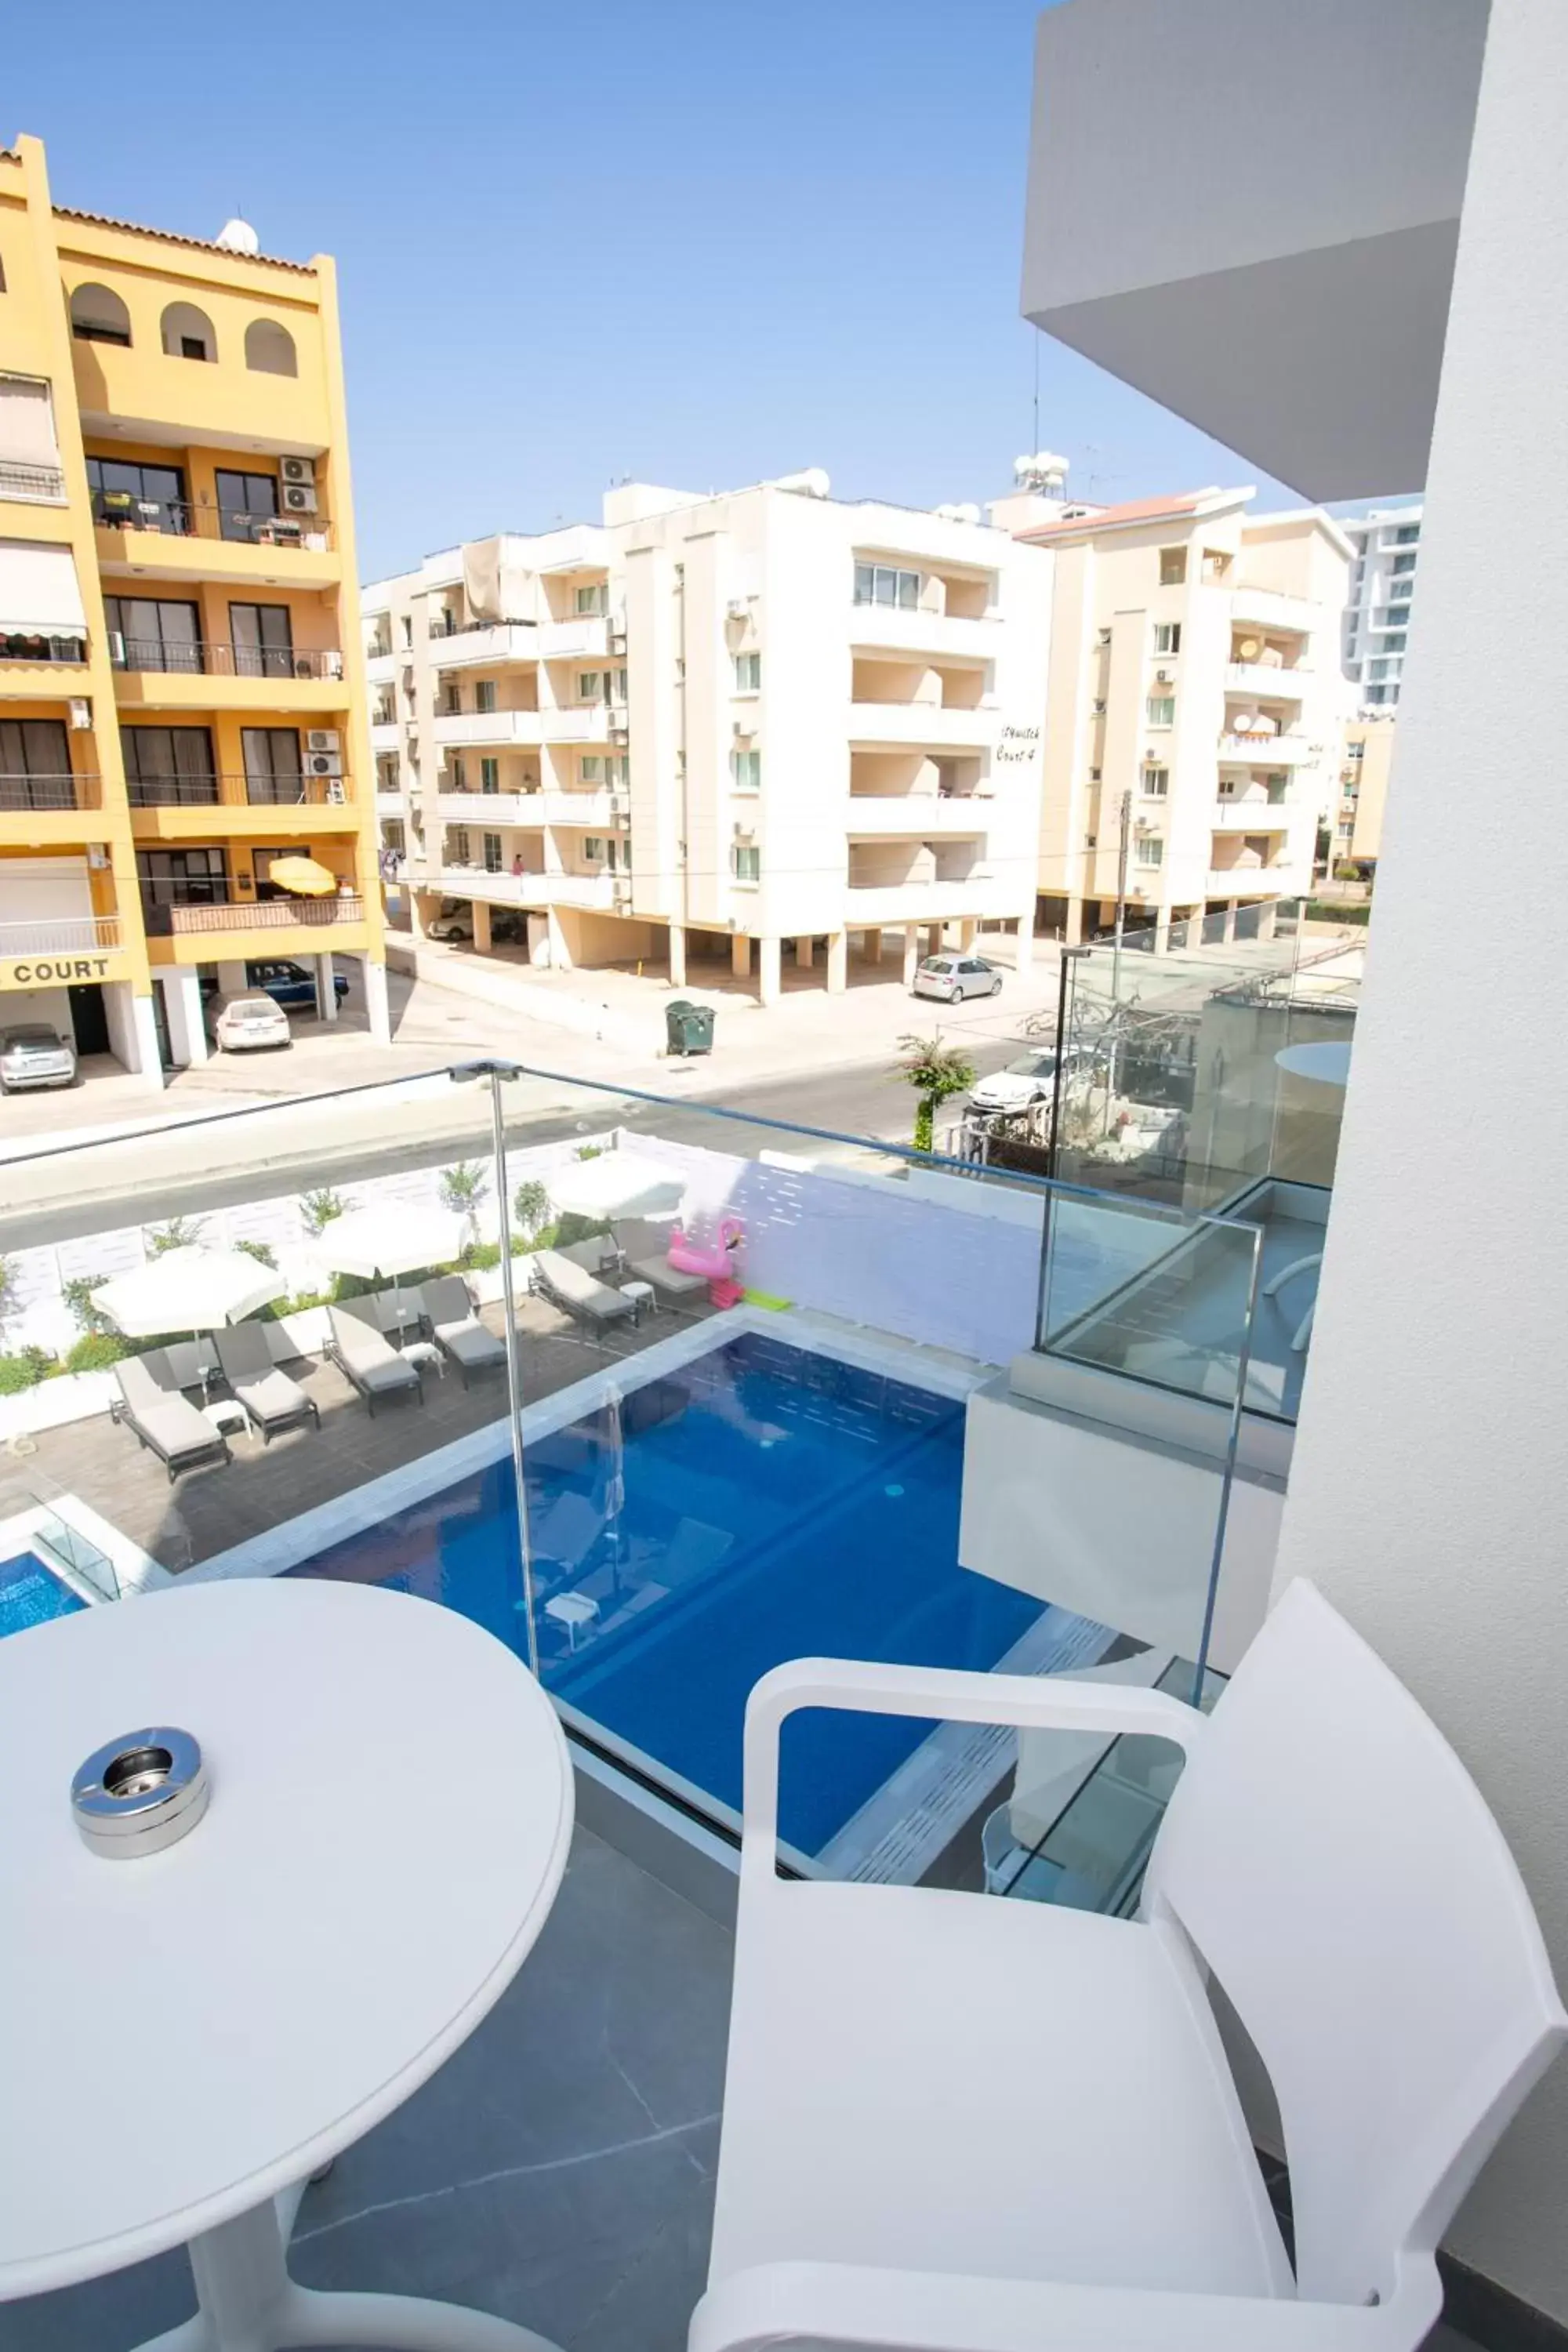 Balcony/Terrace, Swimming Pool in Best Western Plus Larco Hotel